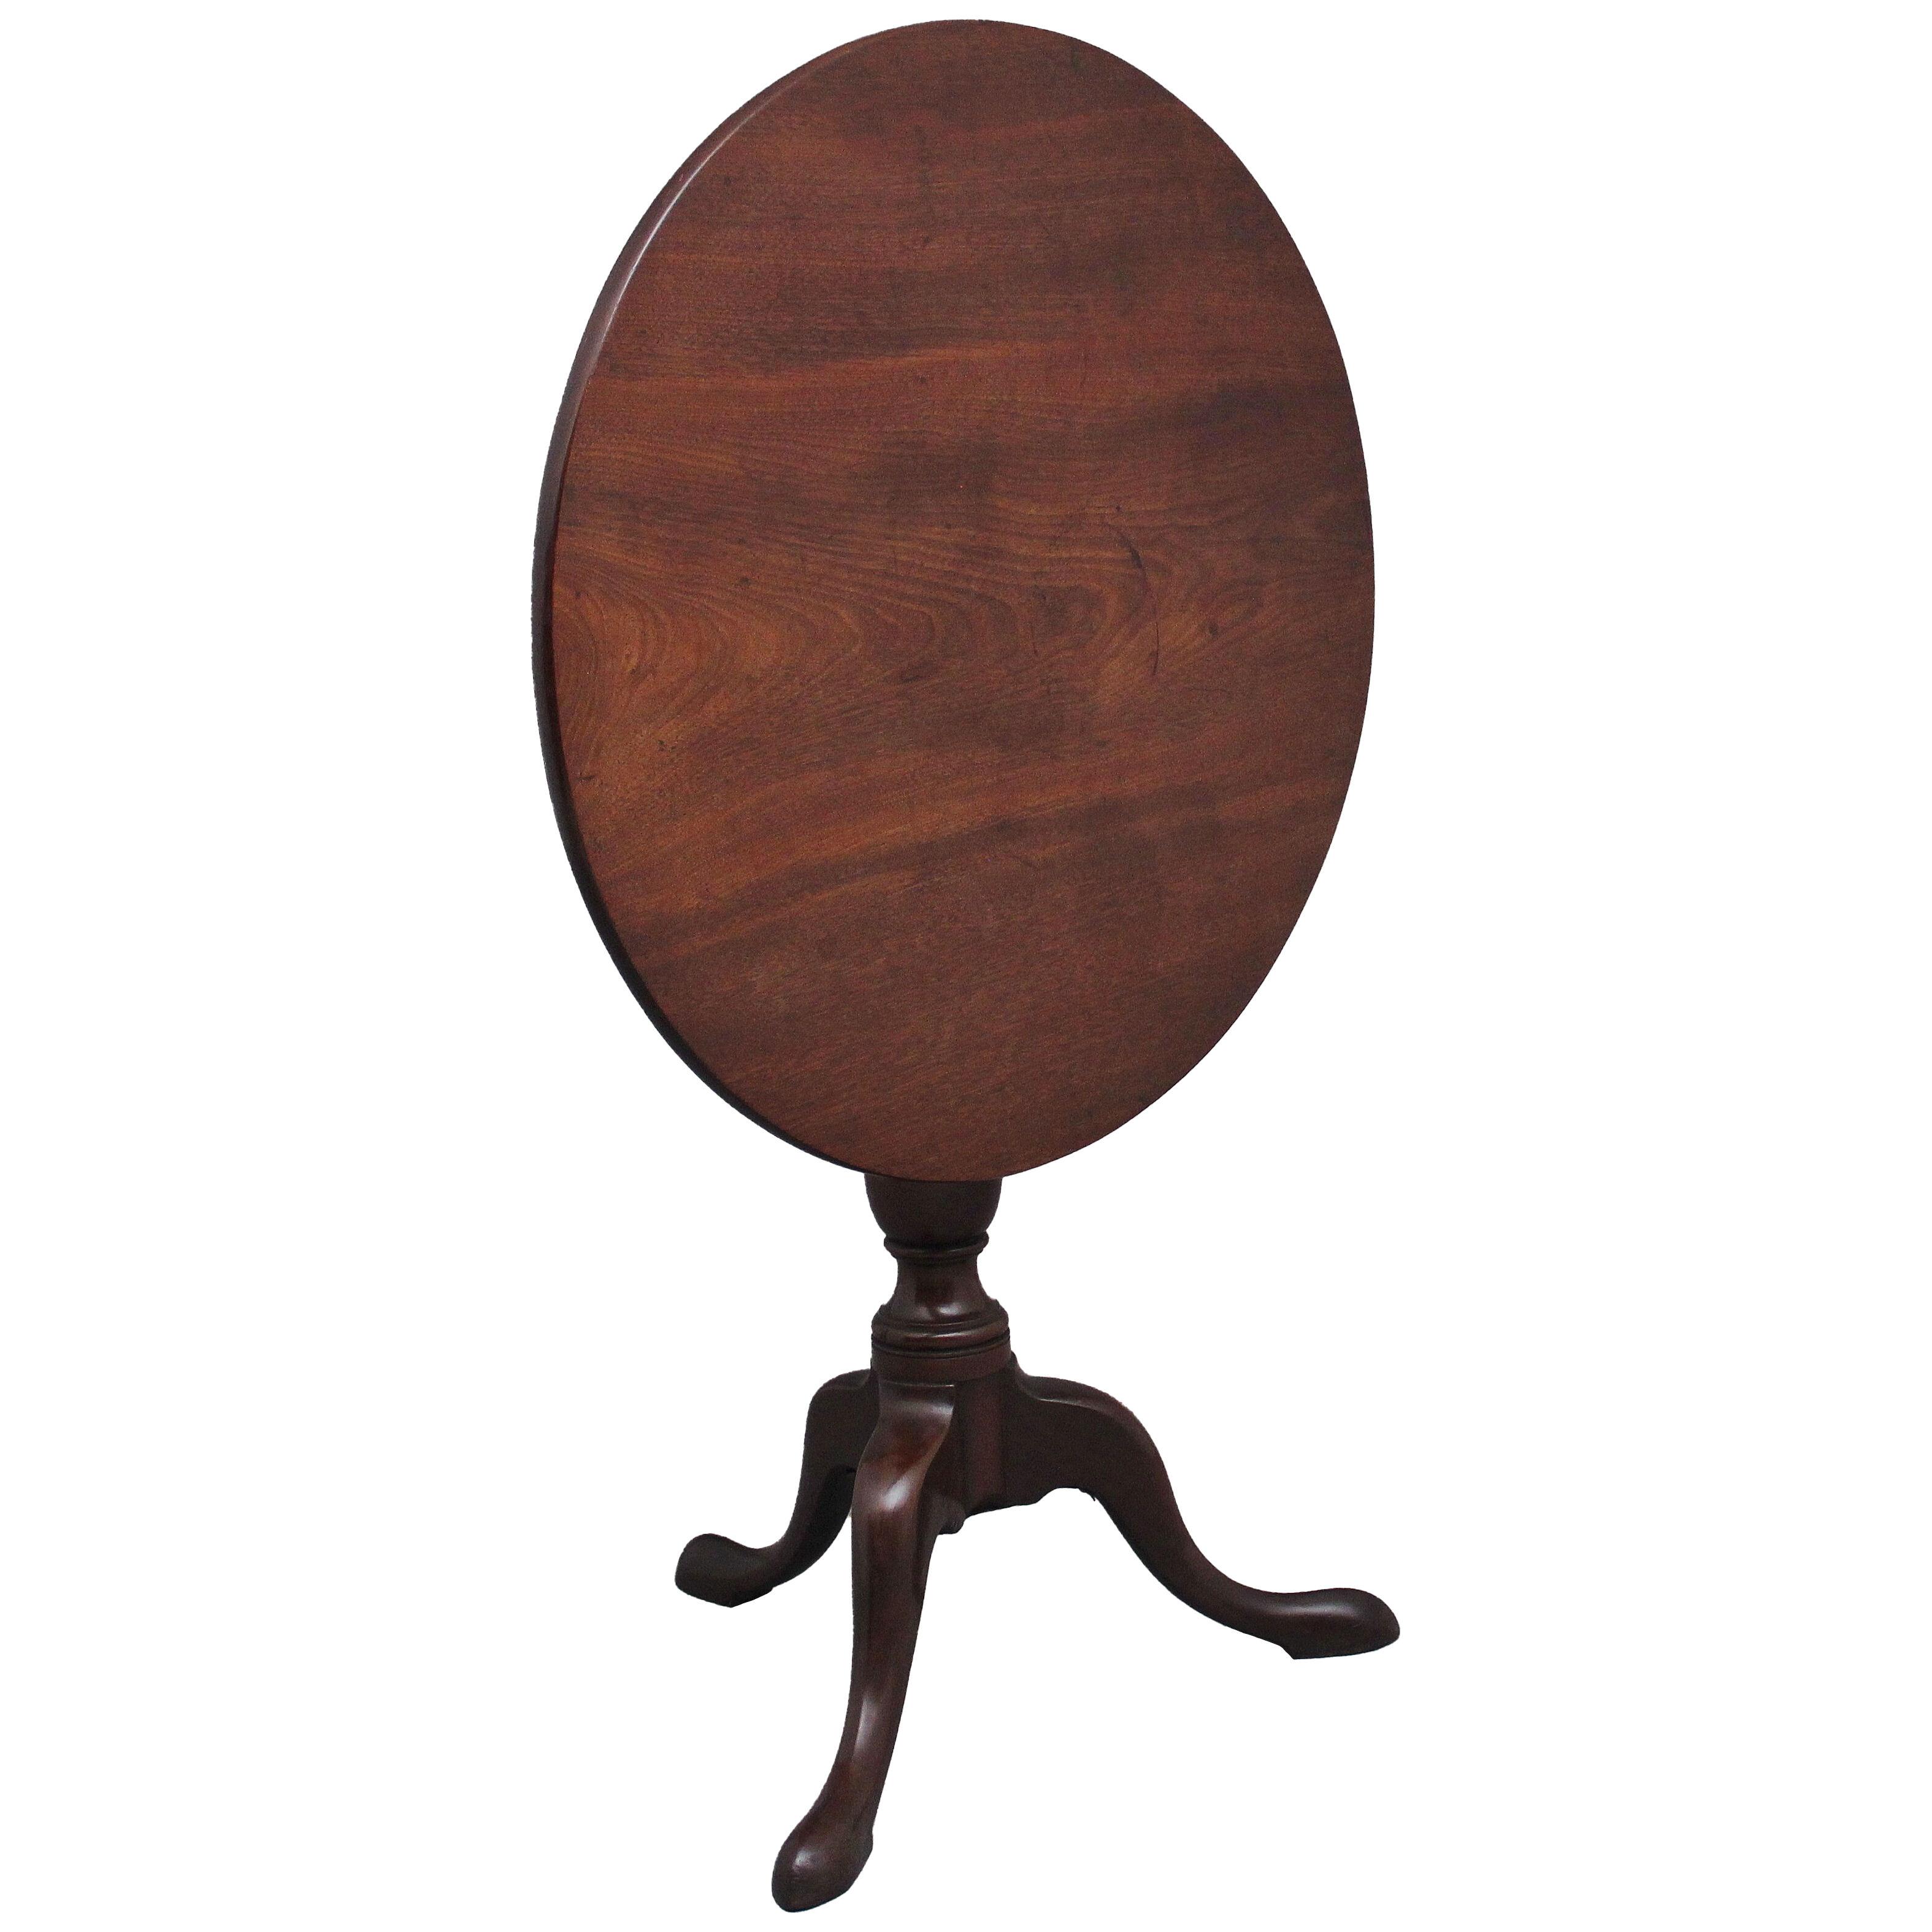 18th Century antique mahogany tripod table